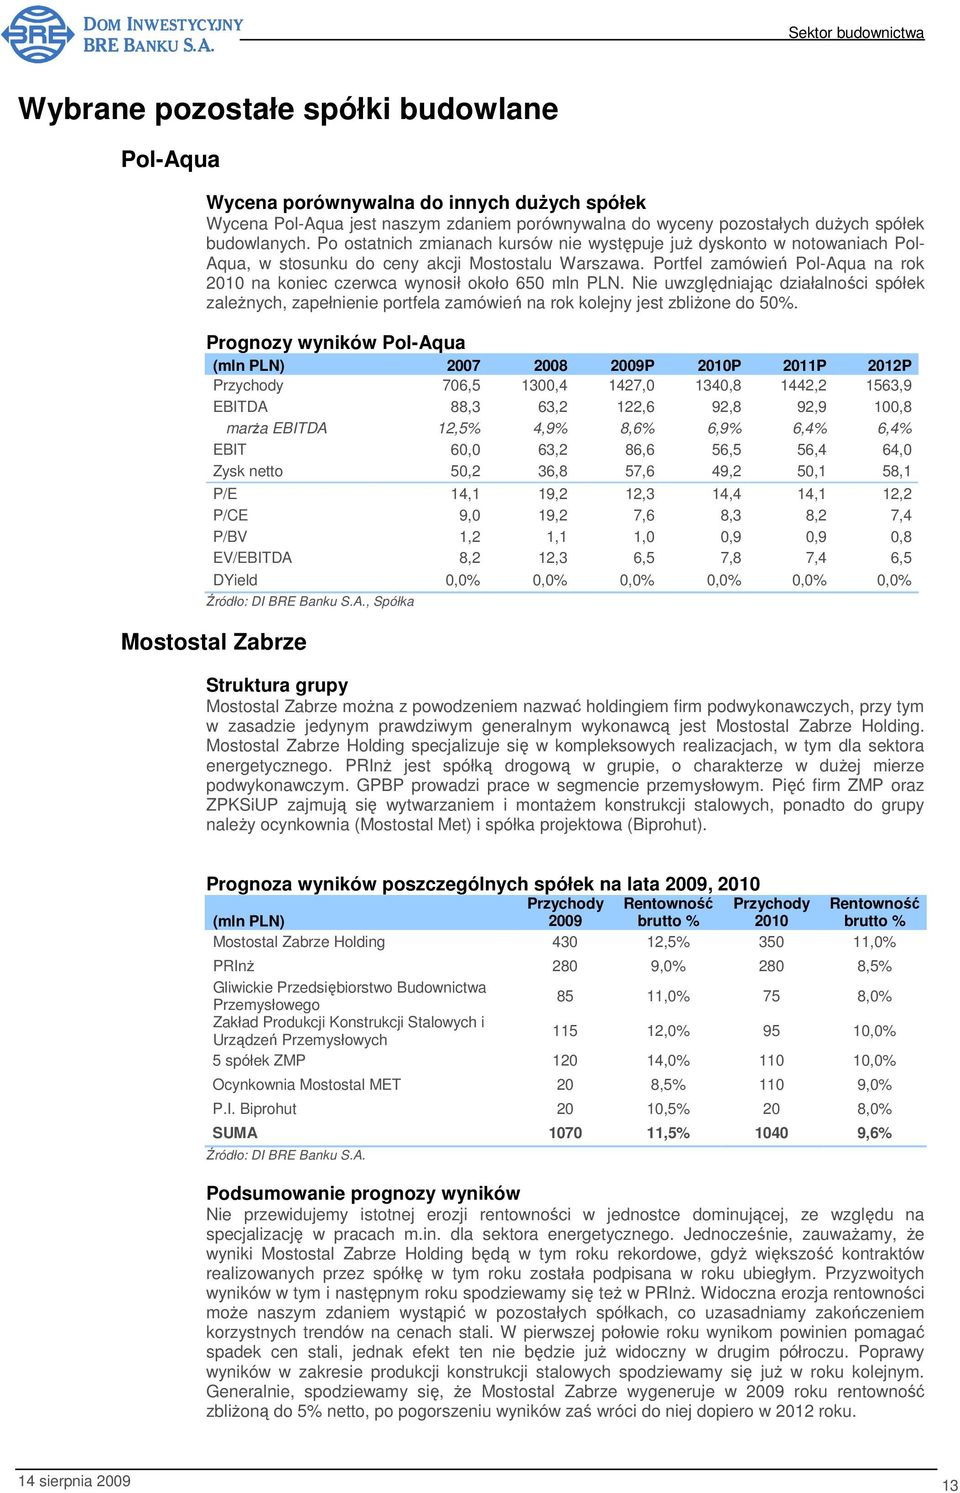 Portfel zamówień Pol-Aqua na rok 2010 na koniec czerwca wynosił około 650 mln PLN. Nie uwzględniając działalności spółek zależnych, zapełnienie portfela zamówień na rok kolejny jest zbliżone do 50%.